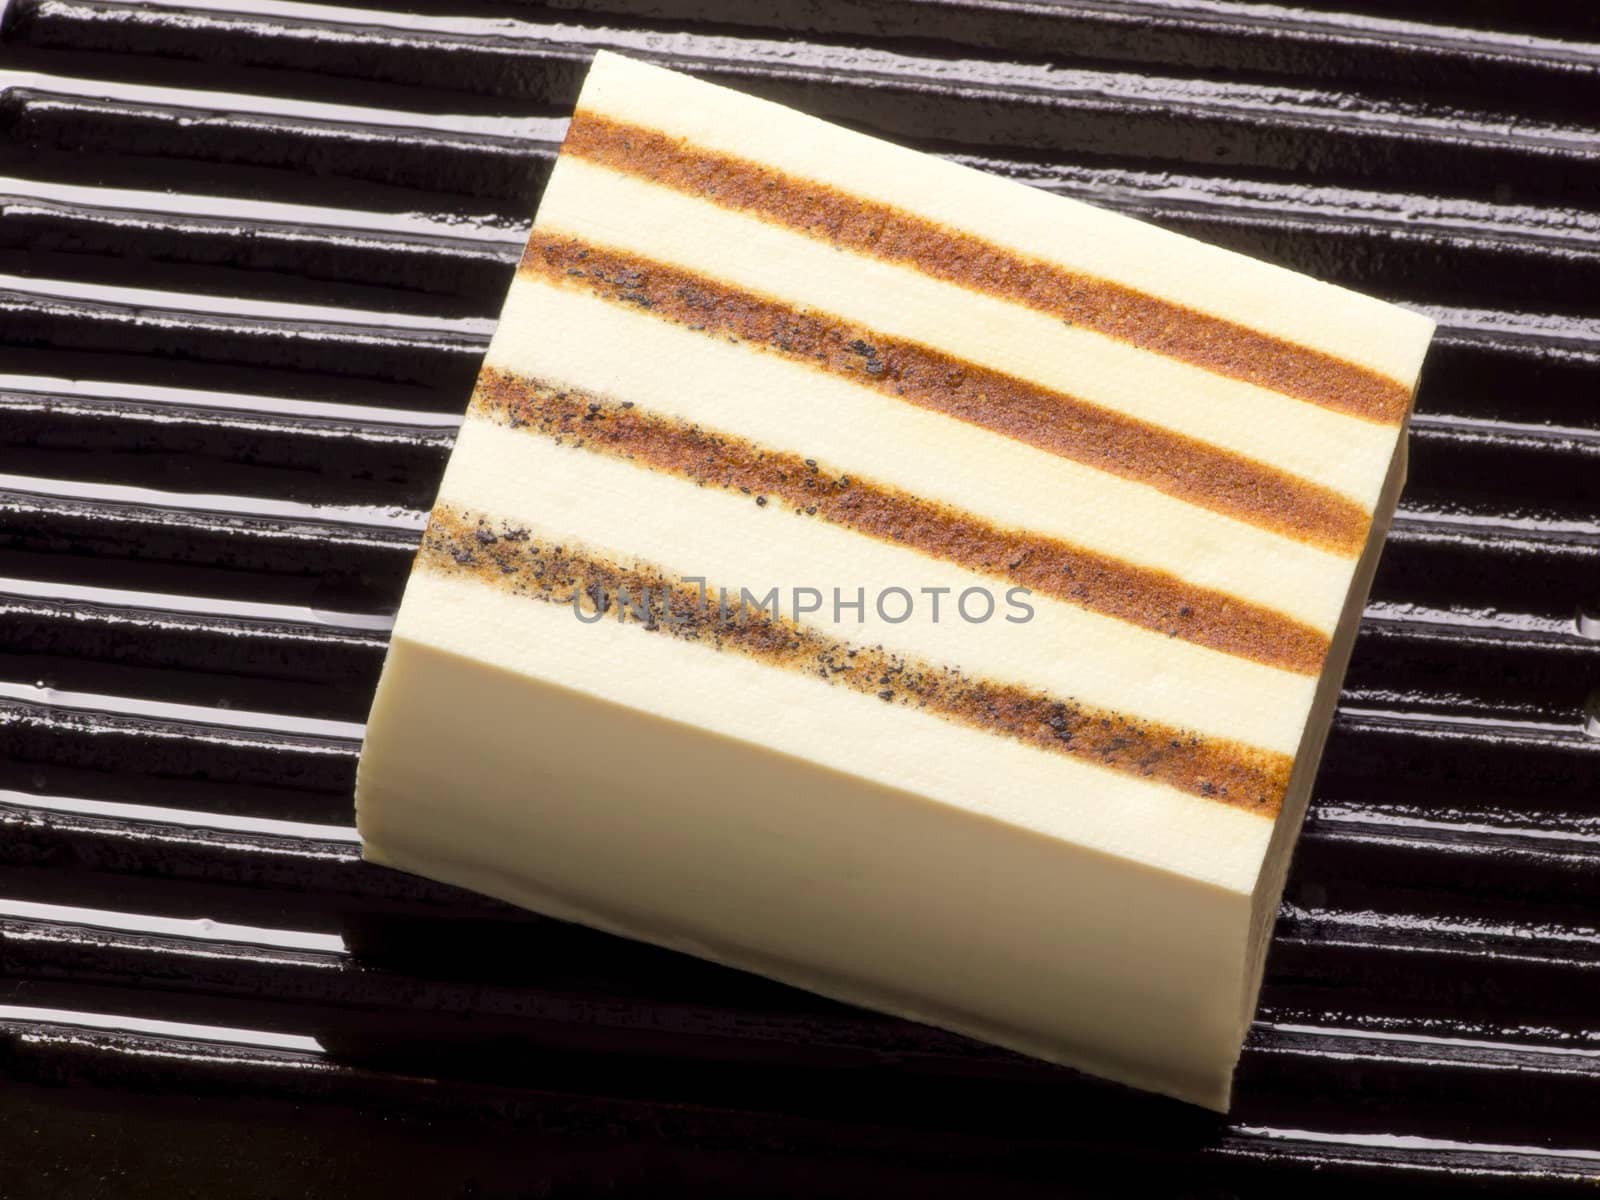 grilled tofu by zkruger